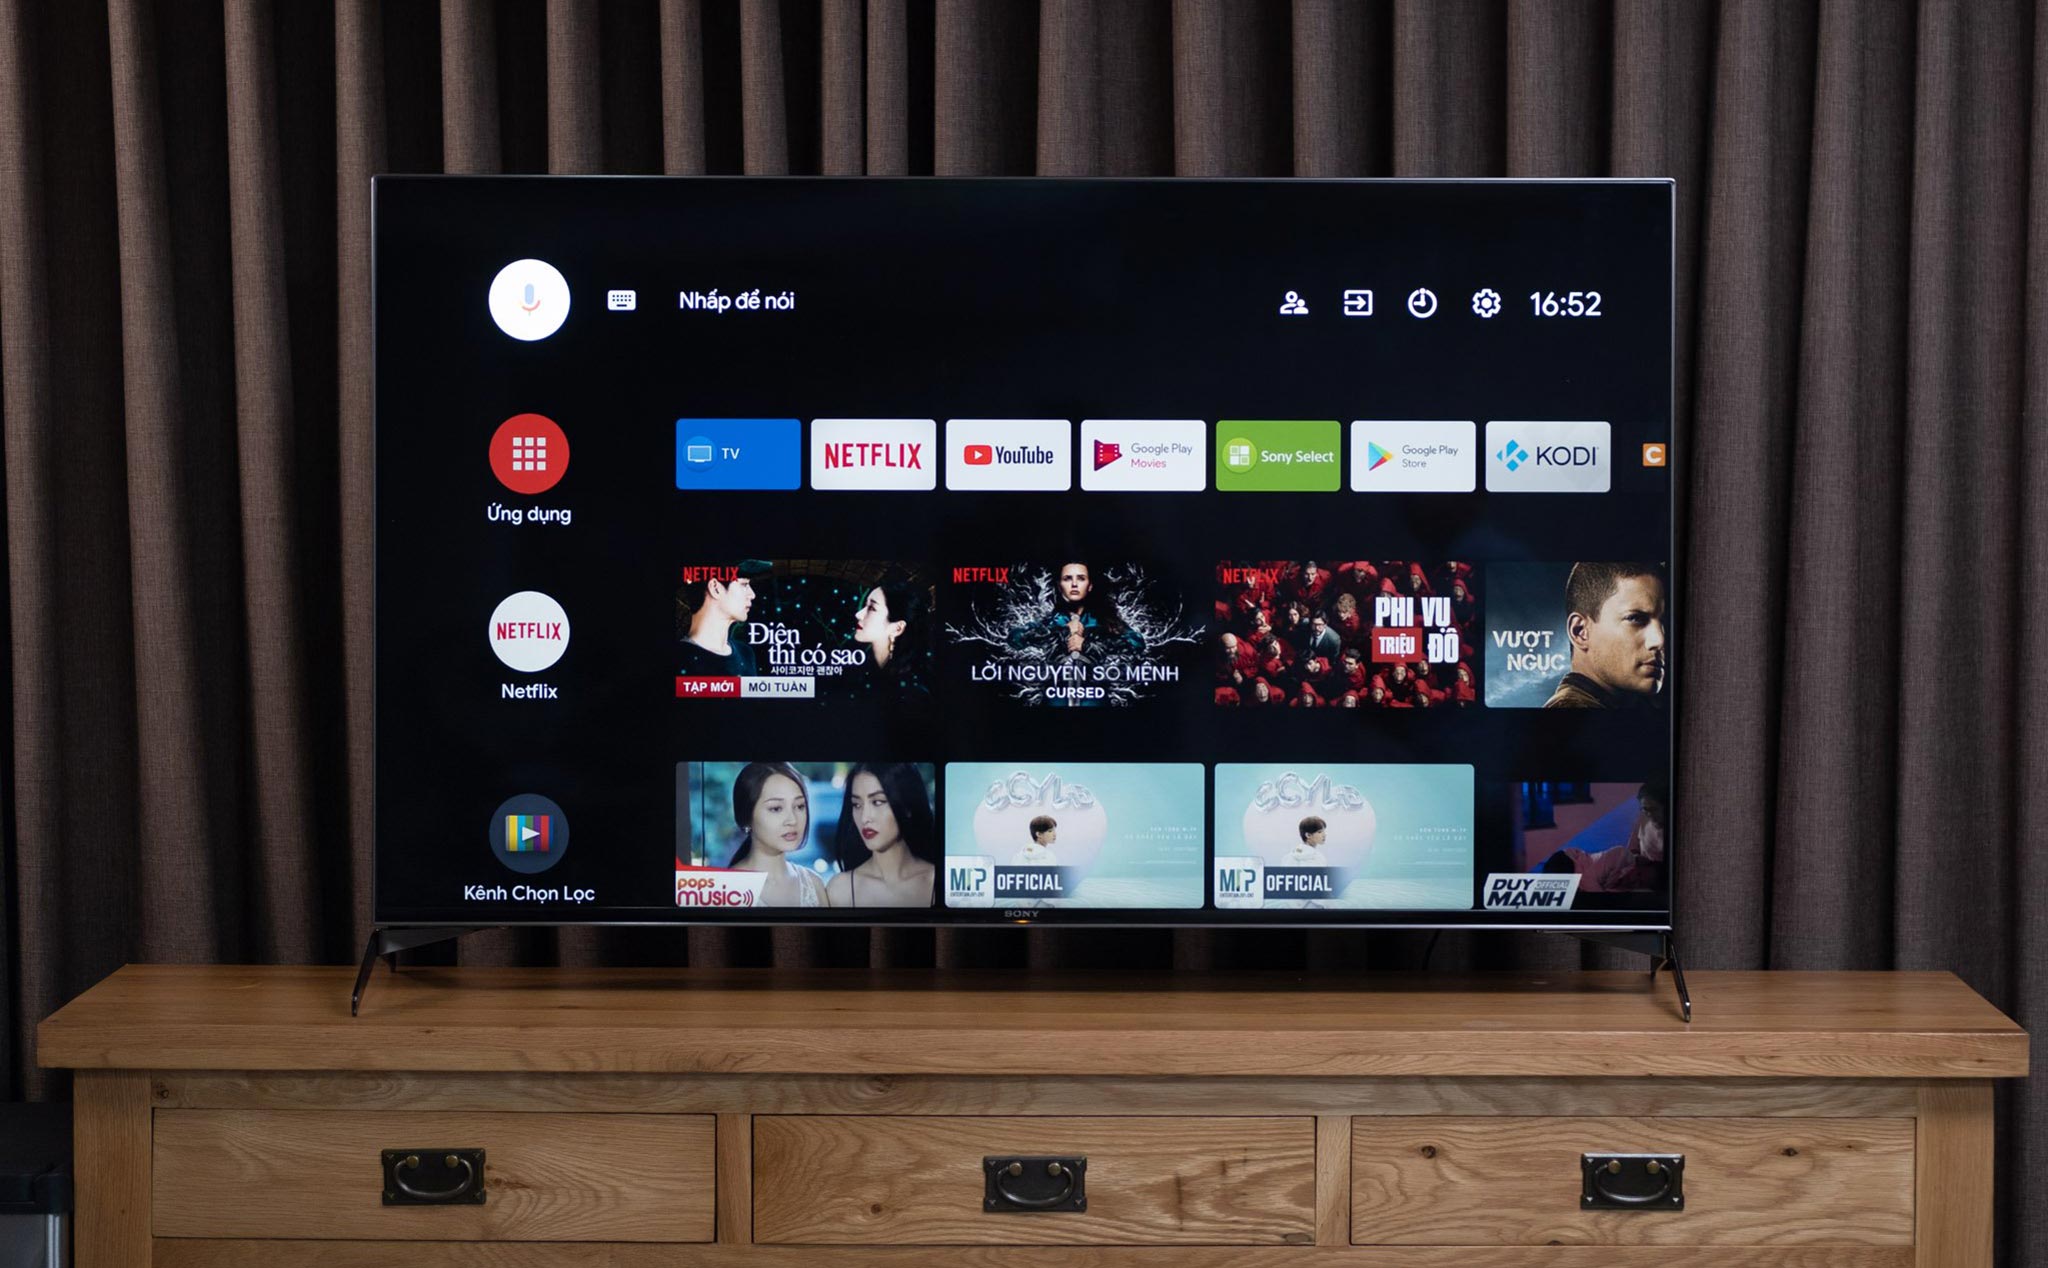 Hệ điều hành Android TV 9.0 trên TV Sony BRAVIA có gì mới?